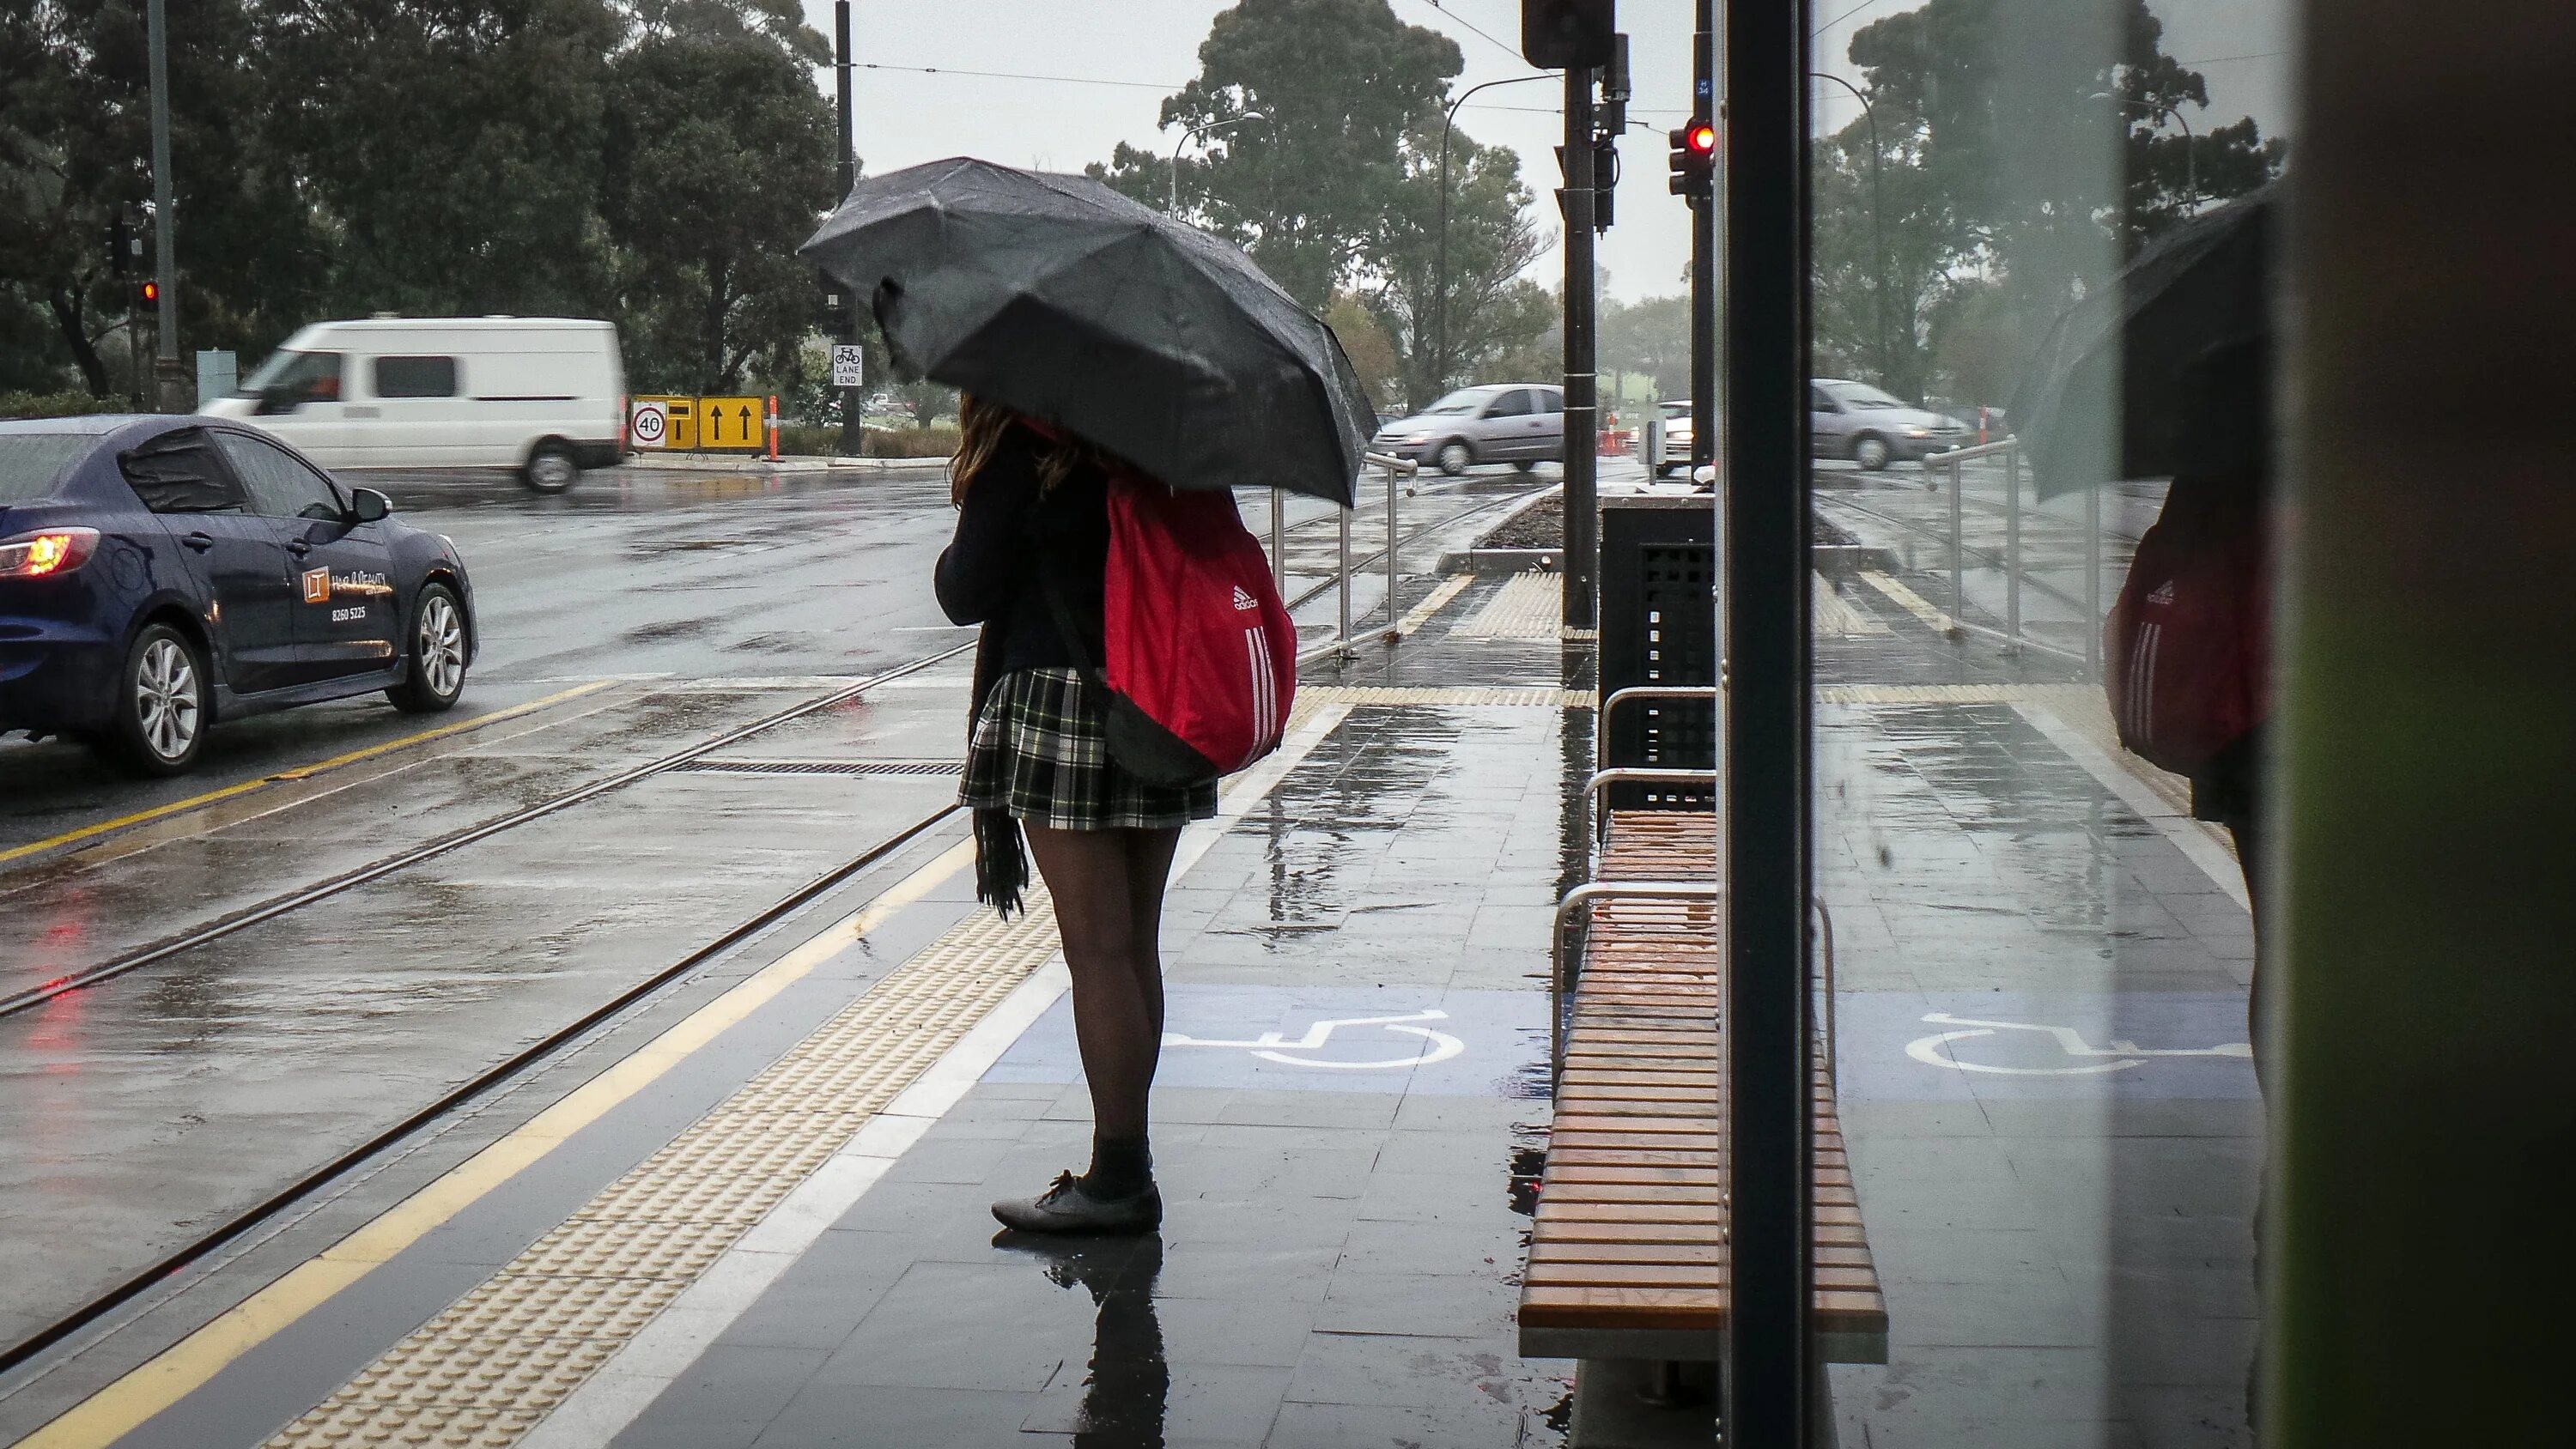 Остановка женщина. Люди на остановке с зонтами. Девушка на остановке. Автобусная остановка с людьми.